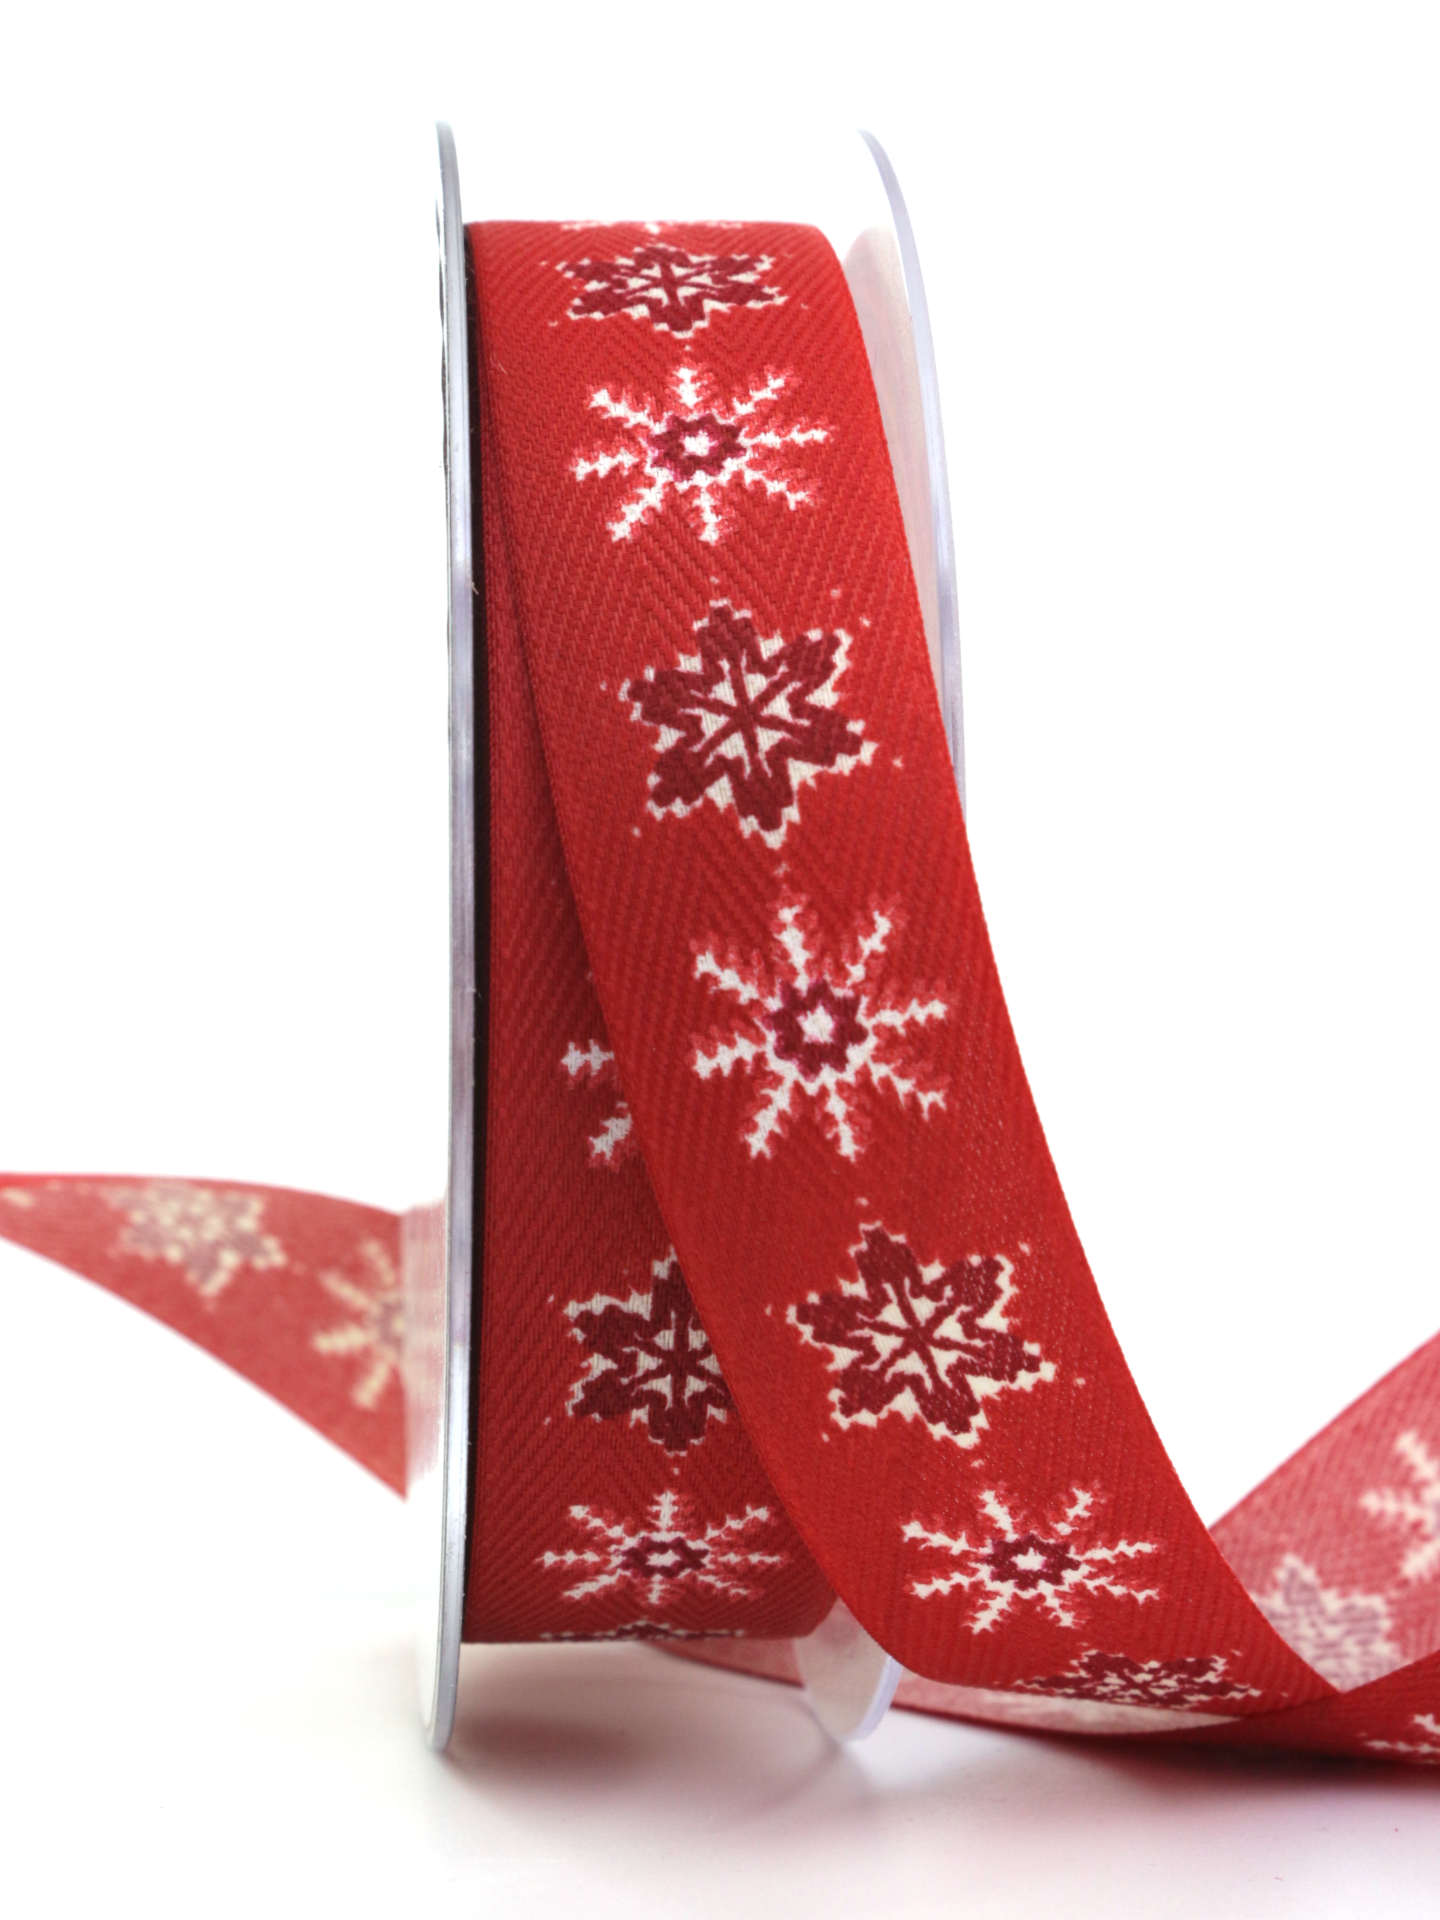 Baumwollband mit Eiskristallen, rot, 25 mm breit - geschenkband-weihnachten-gemustert-weihnachtsbaender, geschenkband-weihnachten-weihnachtsbaender, weihnachtsbaender